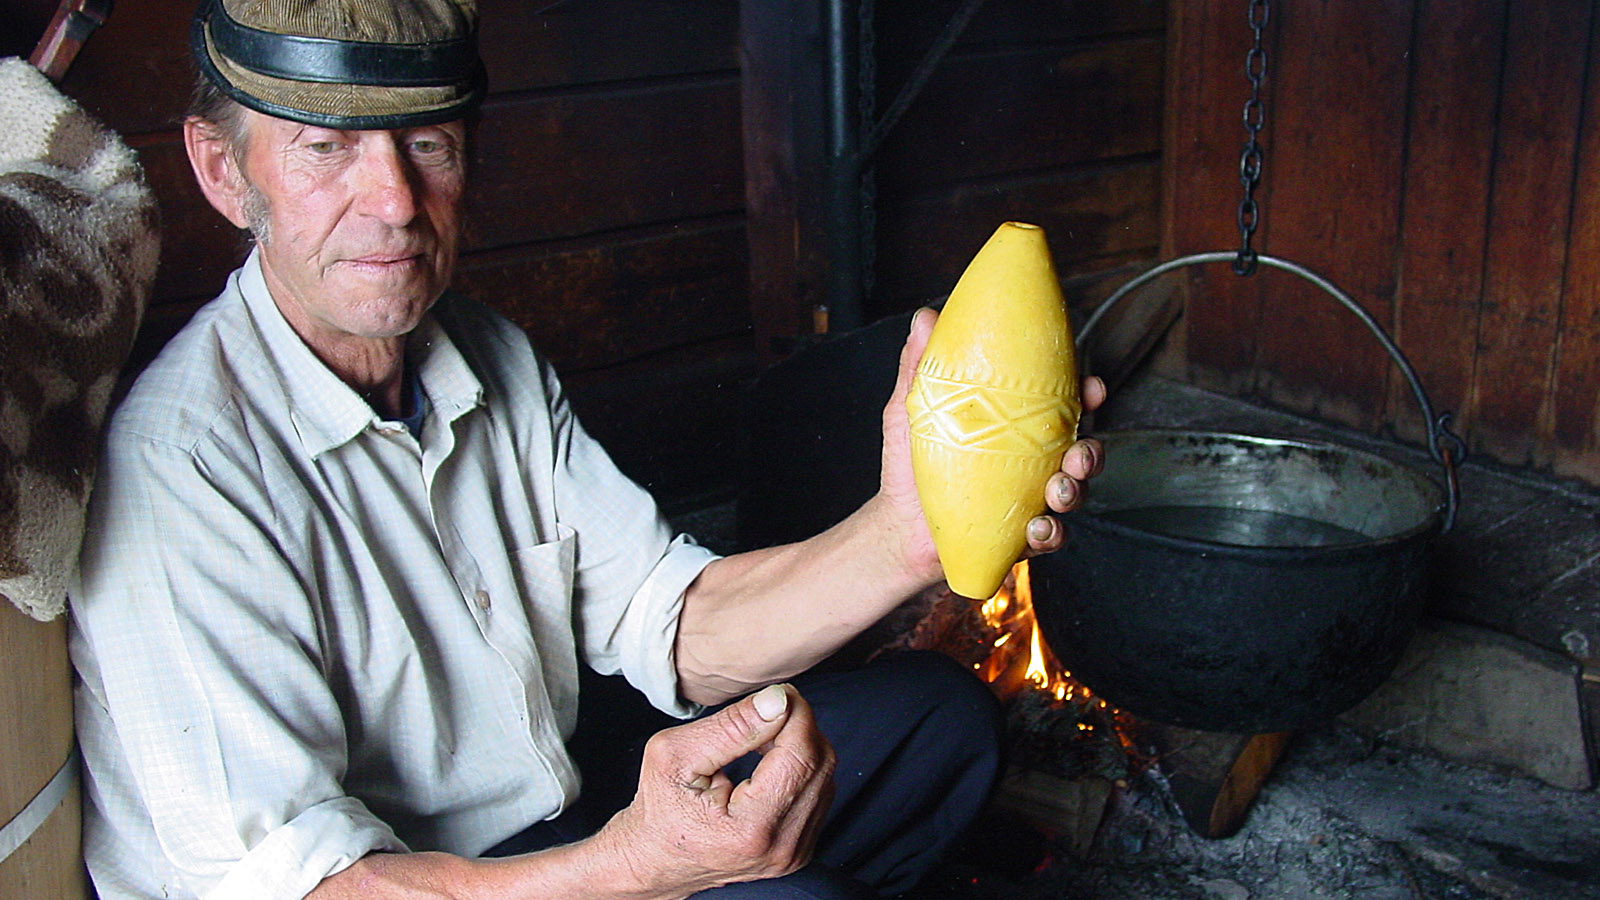 Hohe Tatra, Jan Urbas bei der Käsefertigung. In der Hand: der geräucherte Hartkäse aus Schafsmilch "Oscypek" - eine regionale Spezialität. Foto: Hilke Maunder 